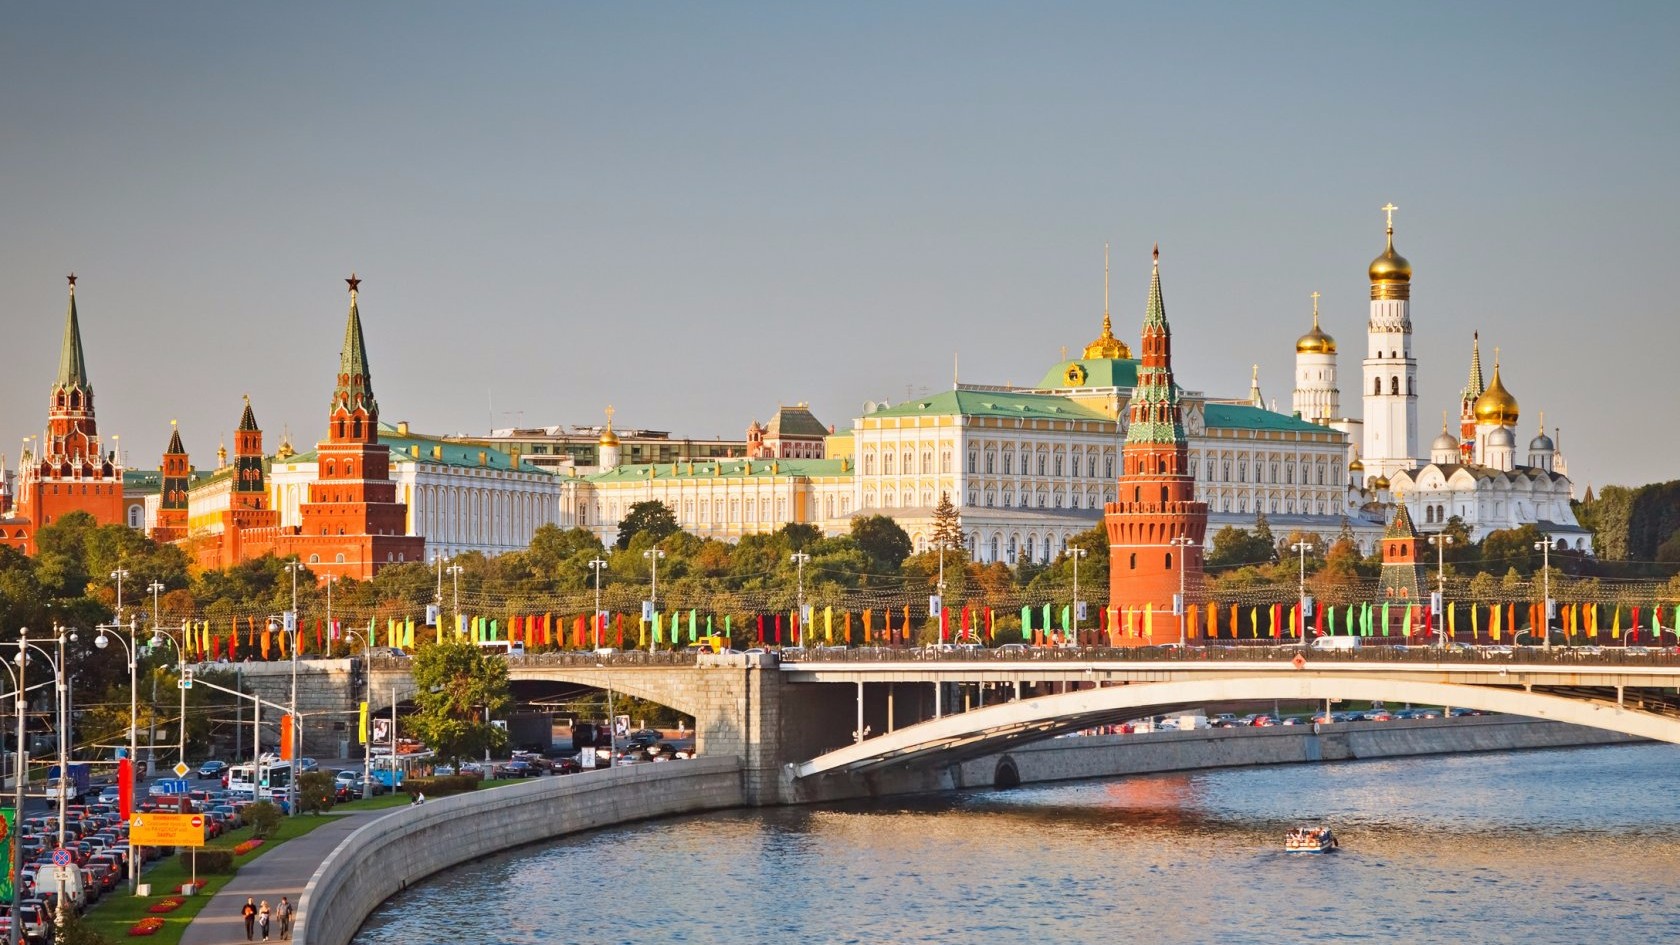 Вид на Кремль, Кремлевский дворец и соборы Кремля